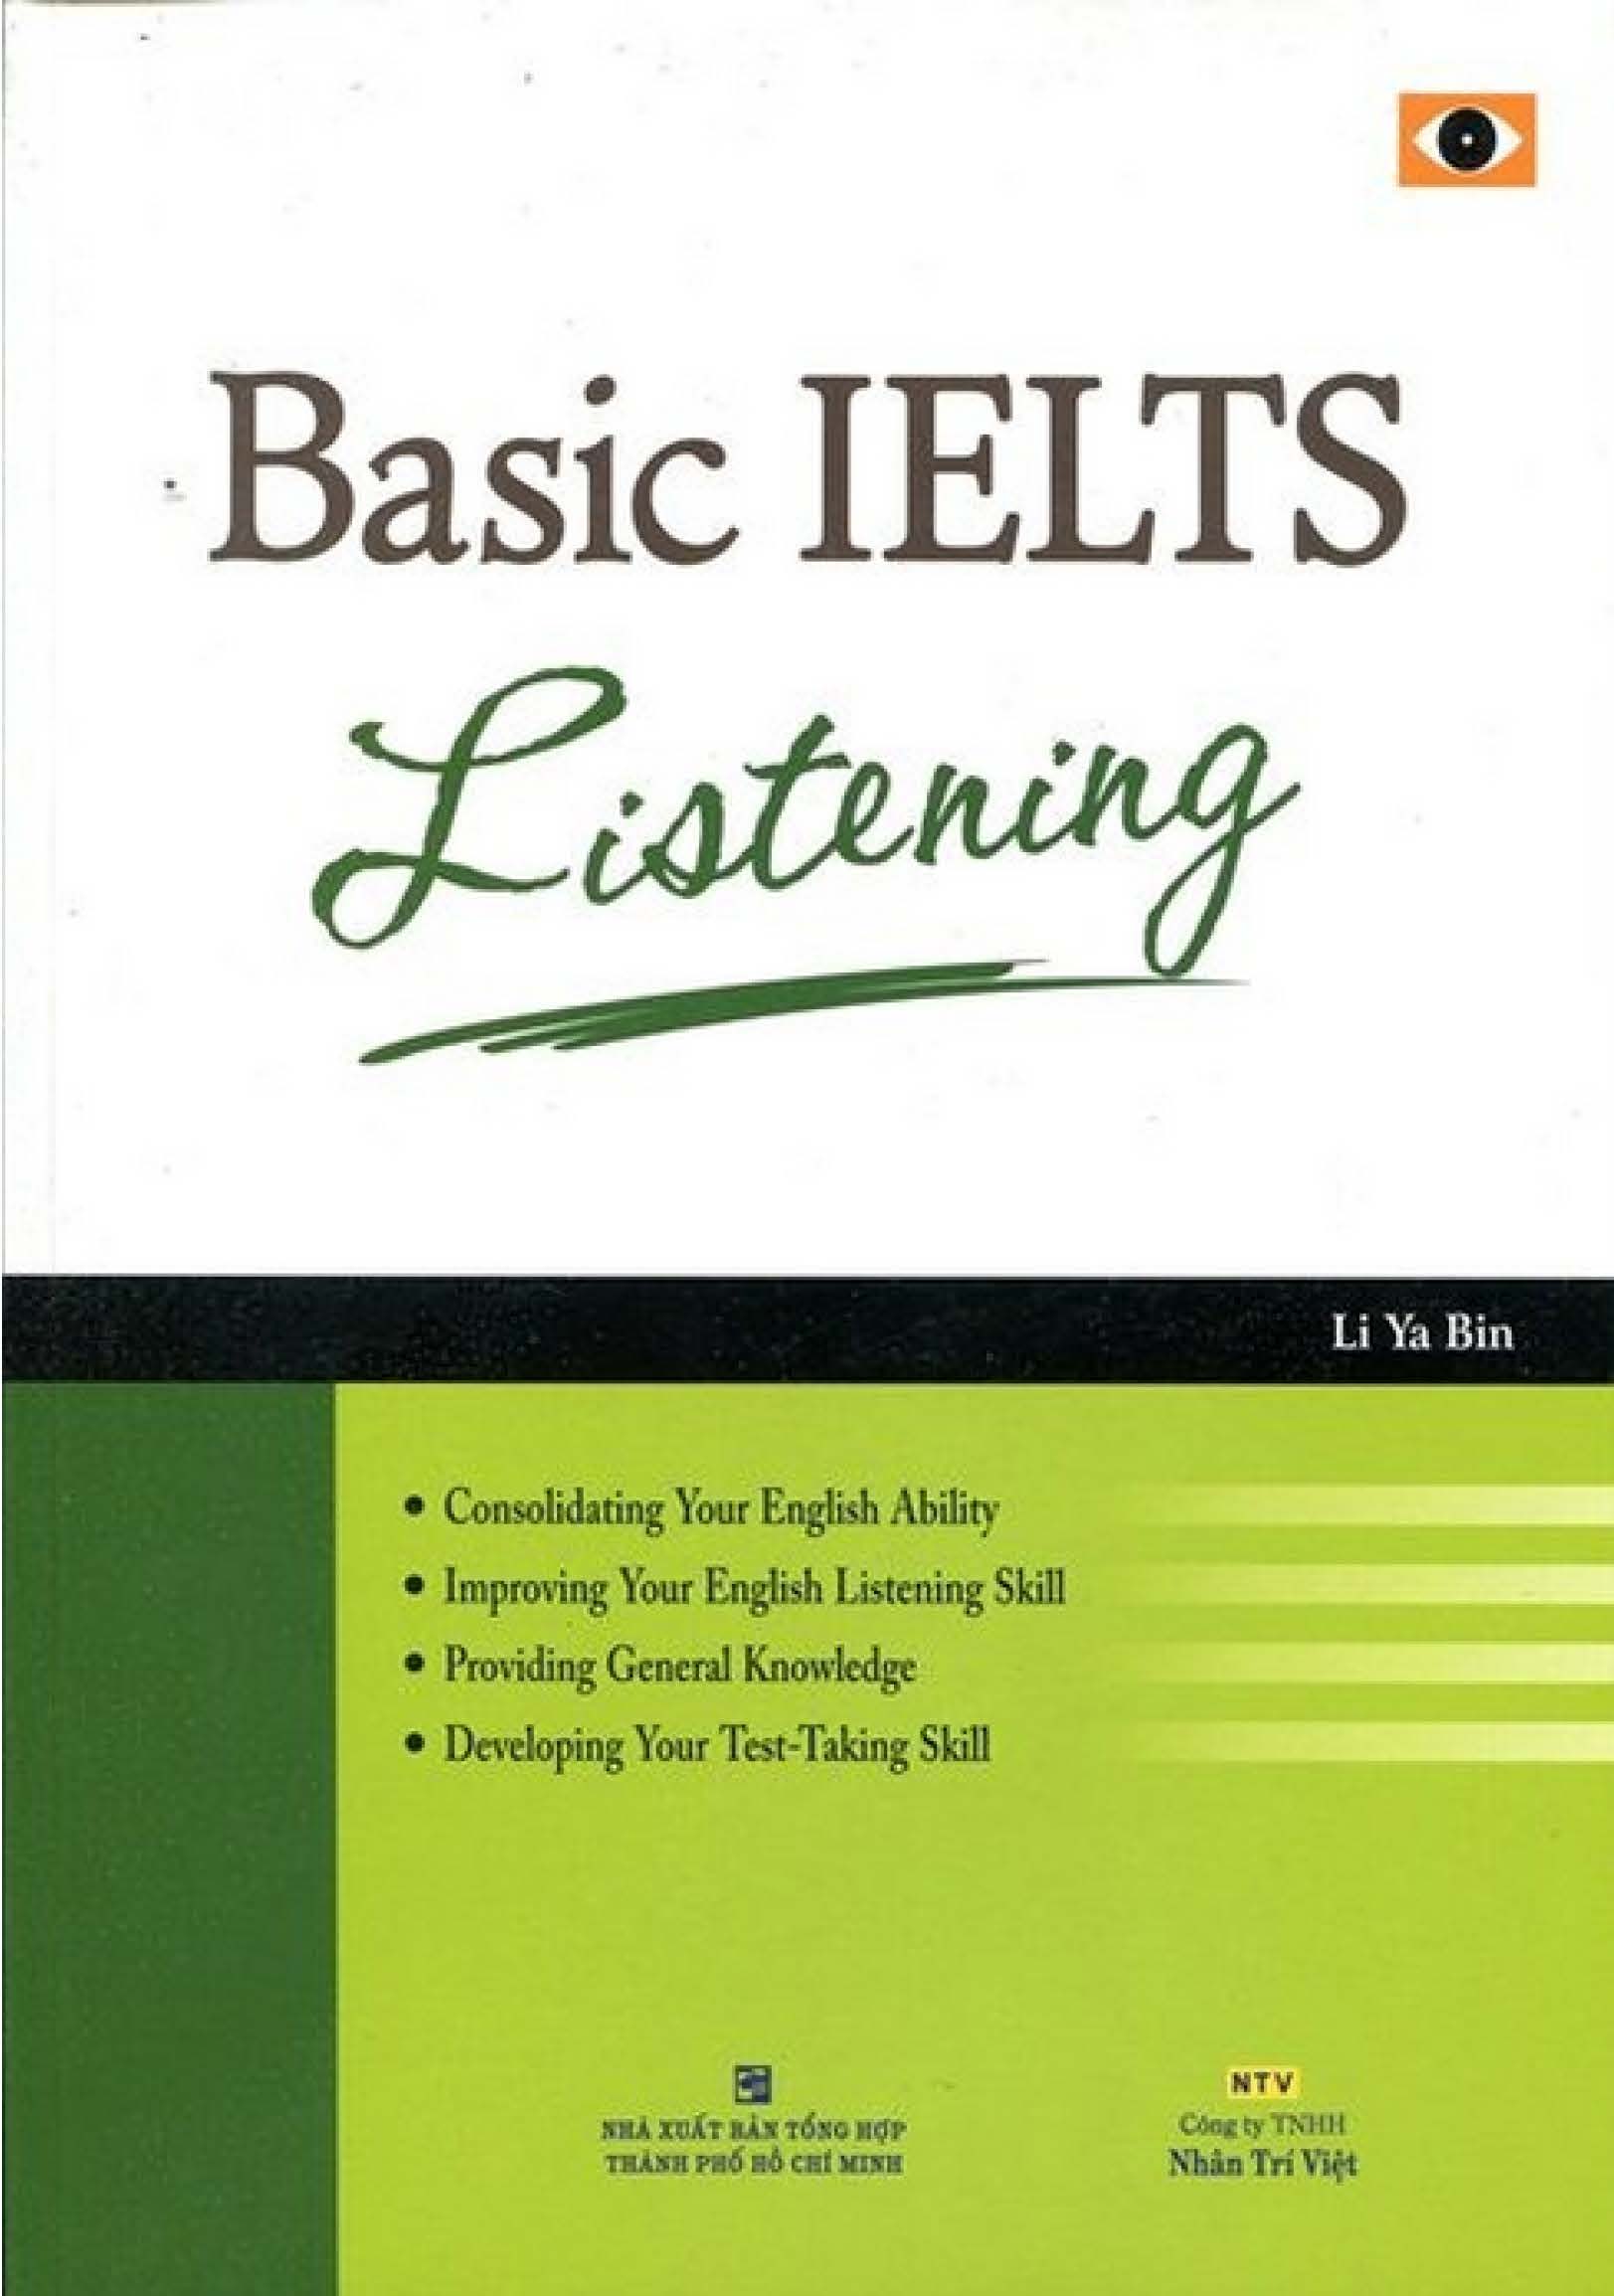 Bìa cuốn sách "Basic IELTS Listening"